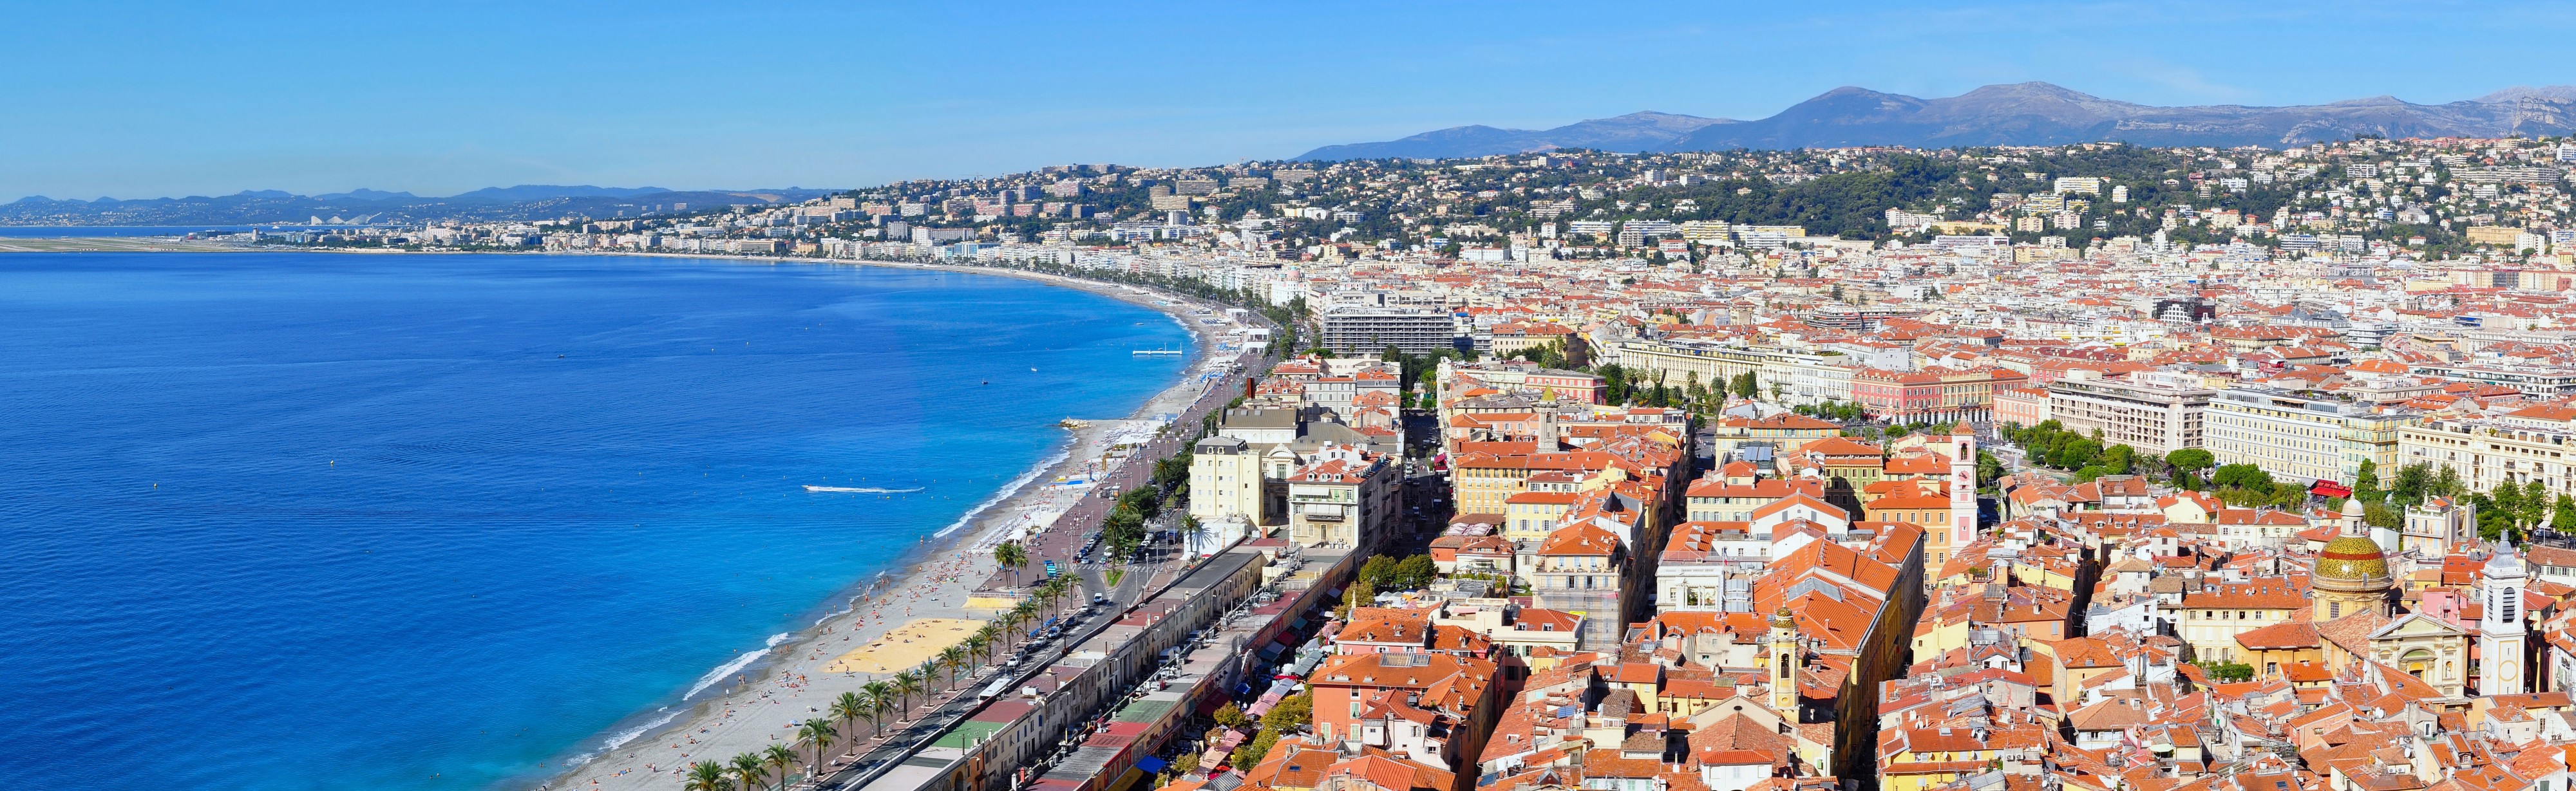 Nizza-Côte d'Azur (cropped)